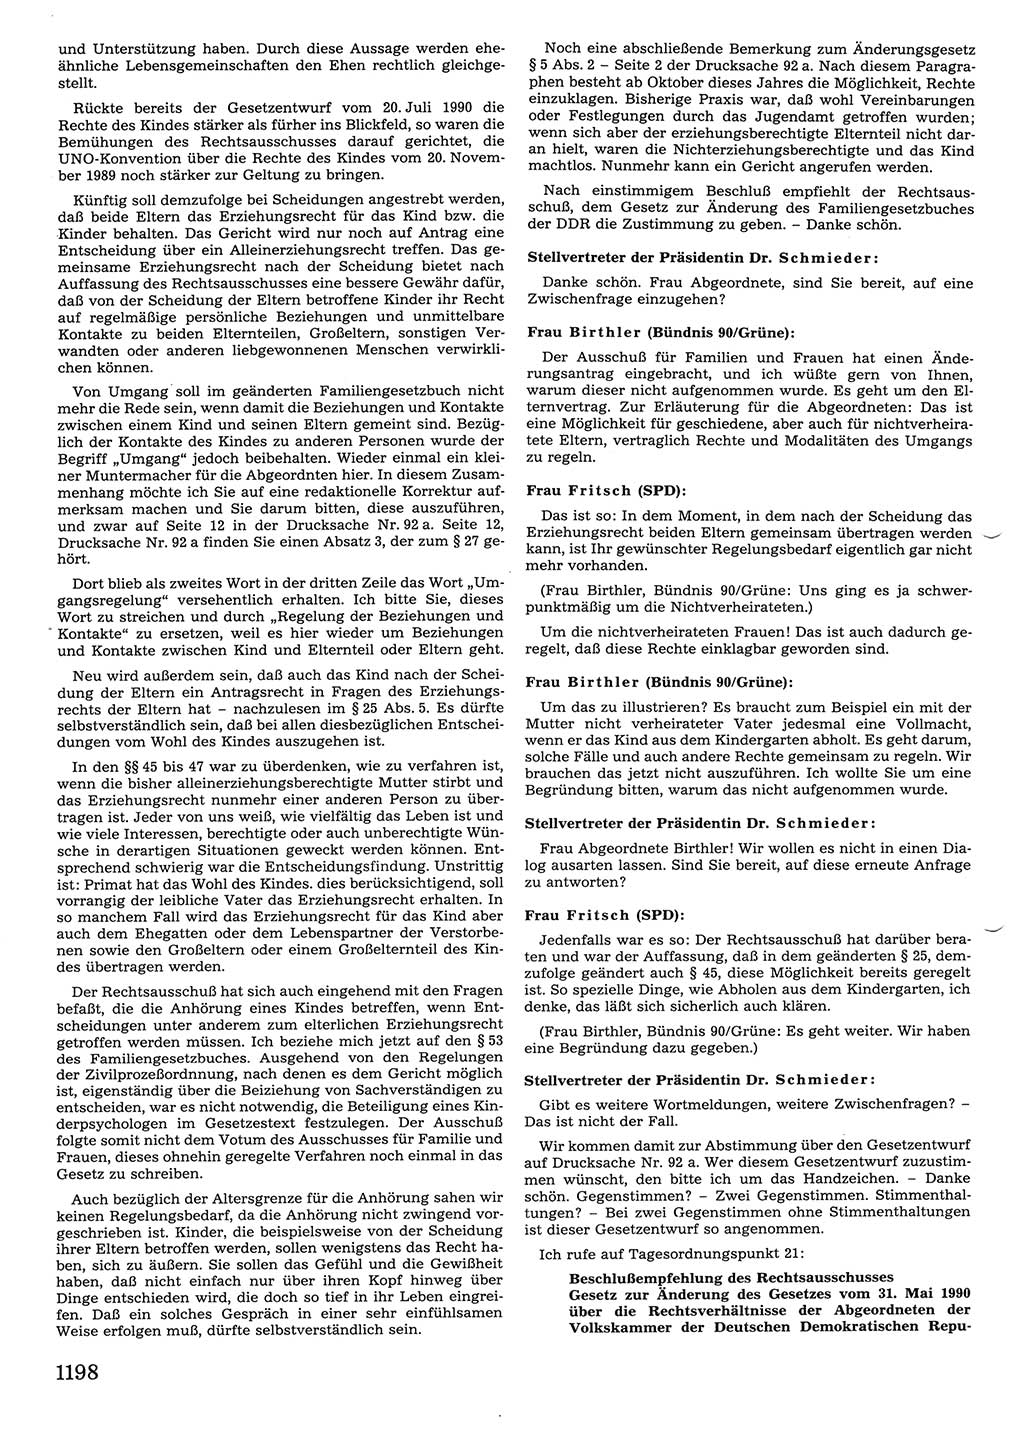 Tagungen der Volkskammer (VK) der Deutschen Demokratischen Republik (DDR), 10. Wahlperiode 1990, Seite 1198 (VK. DDR 10. WP. 1990, Prot. Tg. 1-38, 5.4.-2.10.1990, S. 1198)